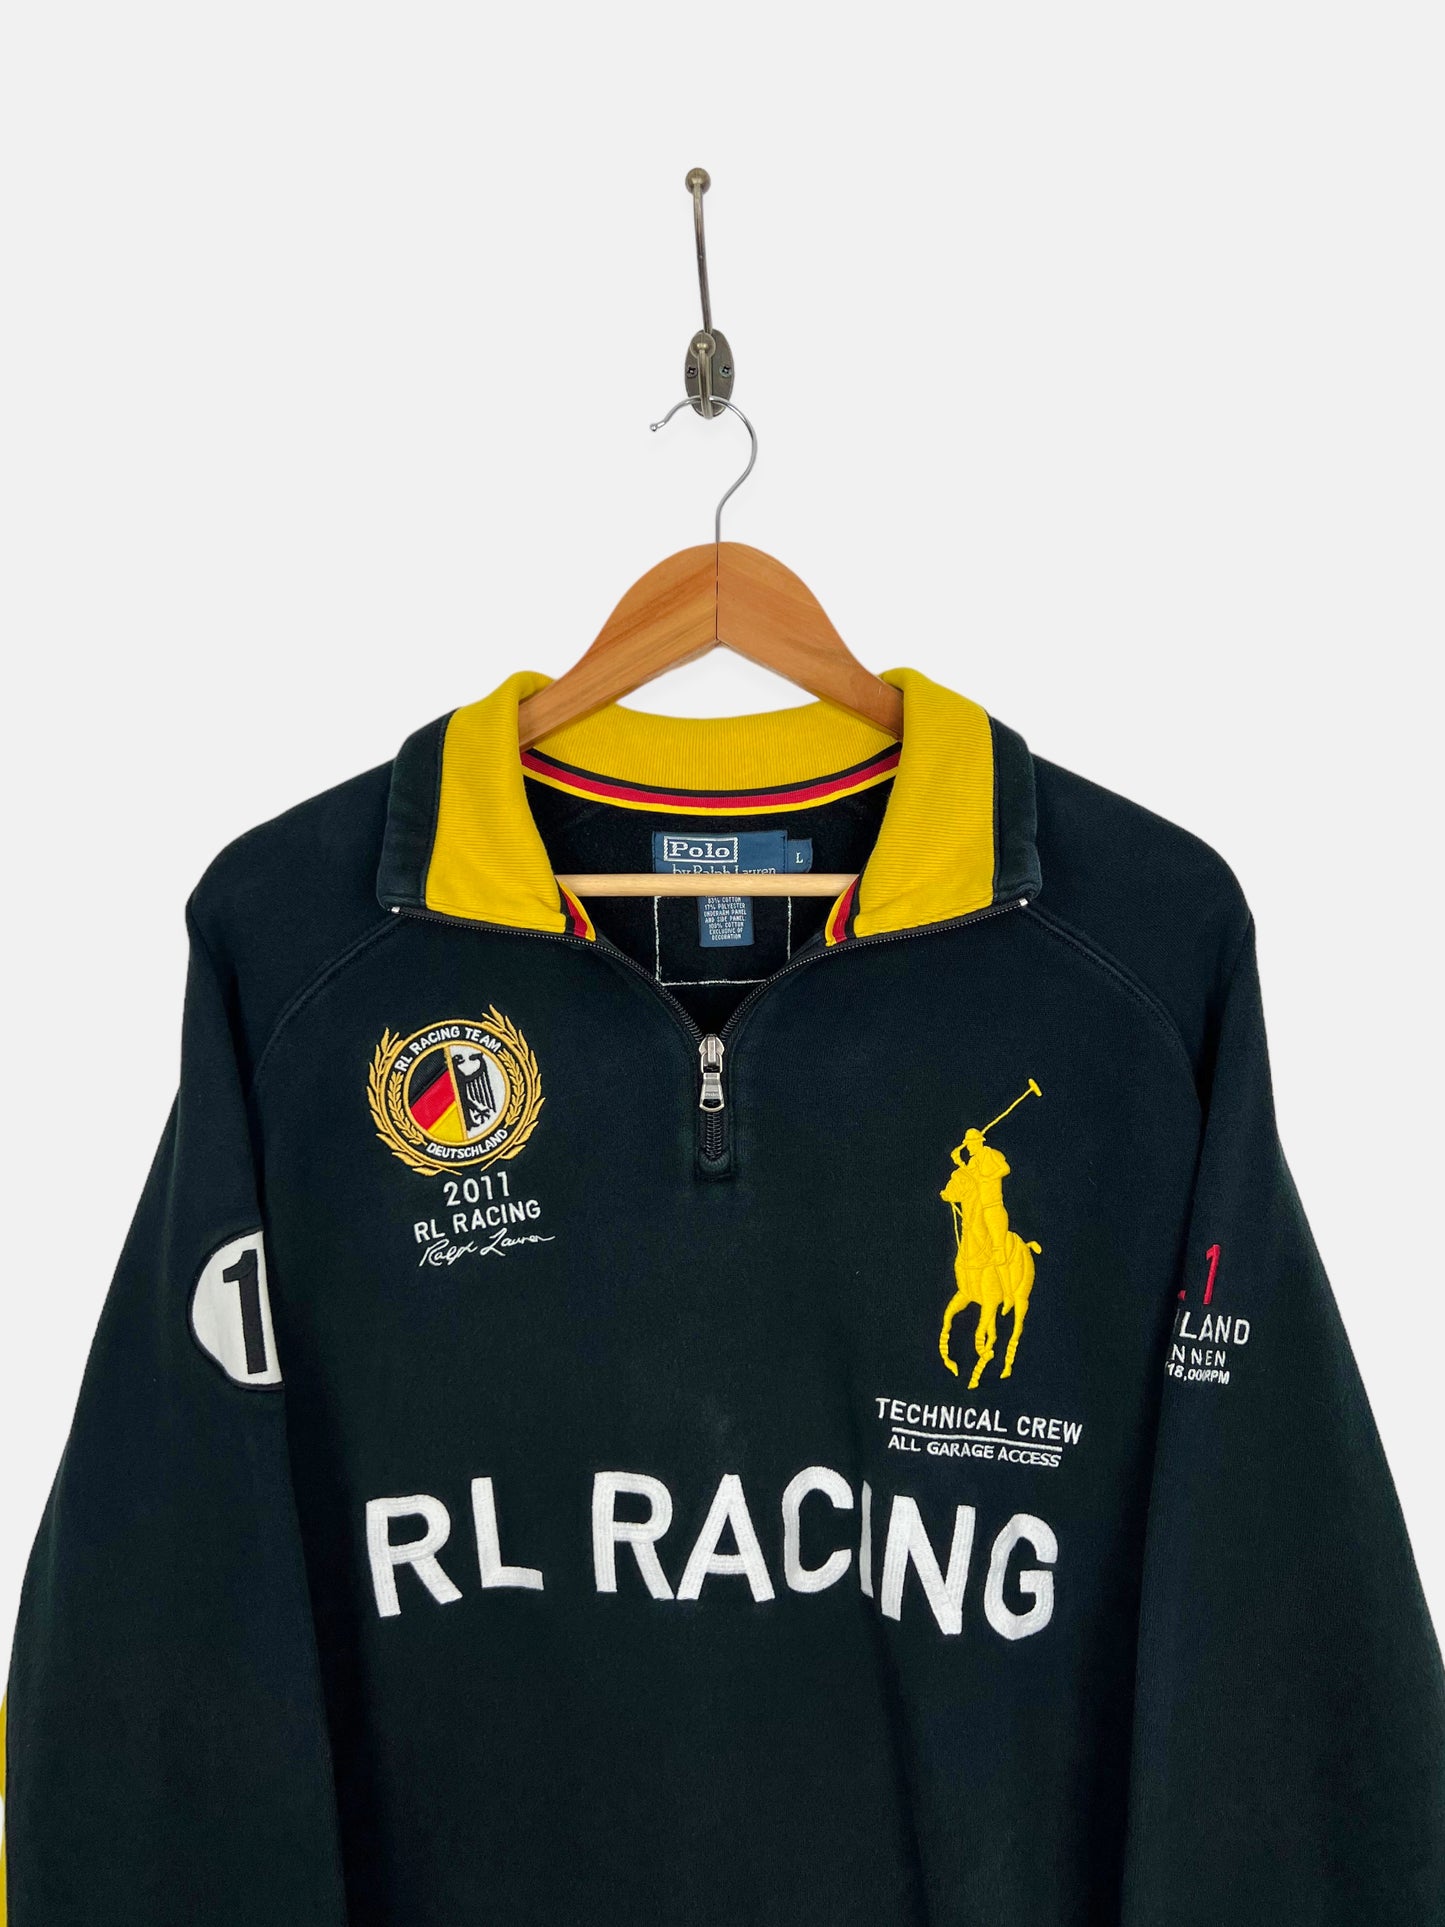 90's Ralph Lauren Racing #19 Embroidered Vintage Sweatshirt/Jacket Size M